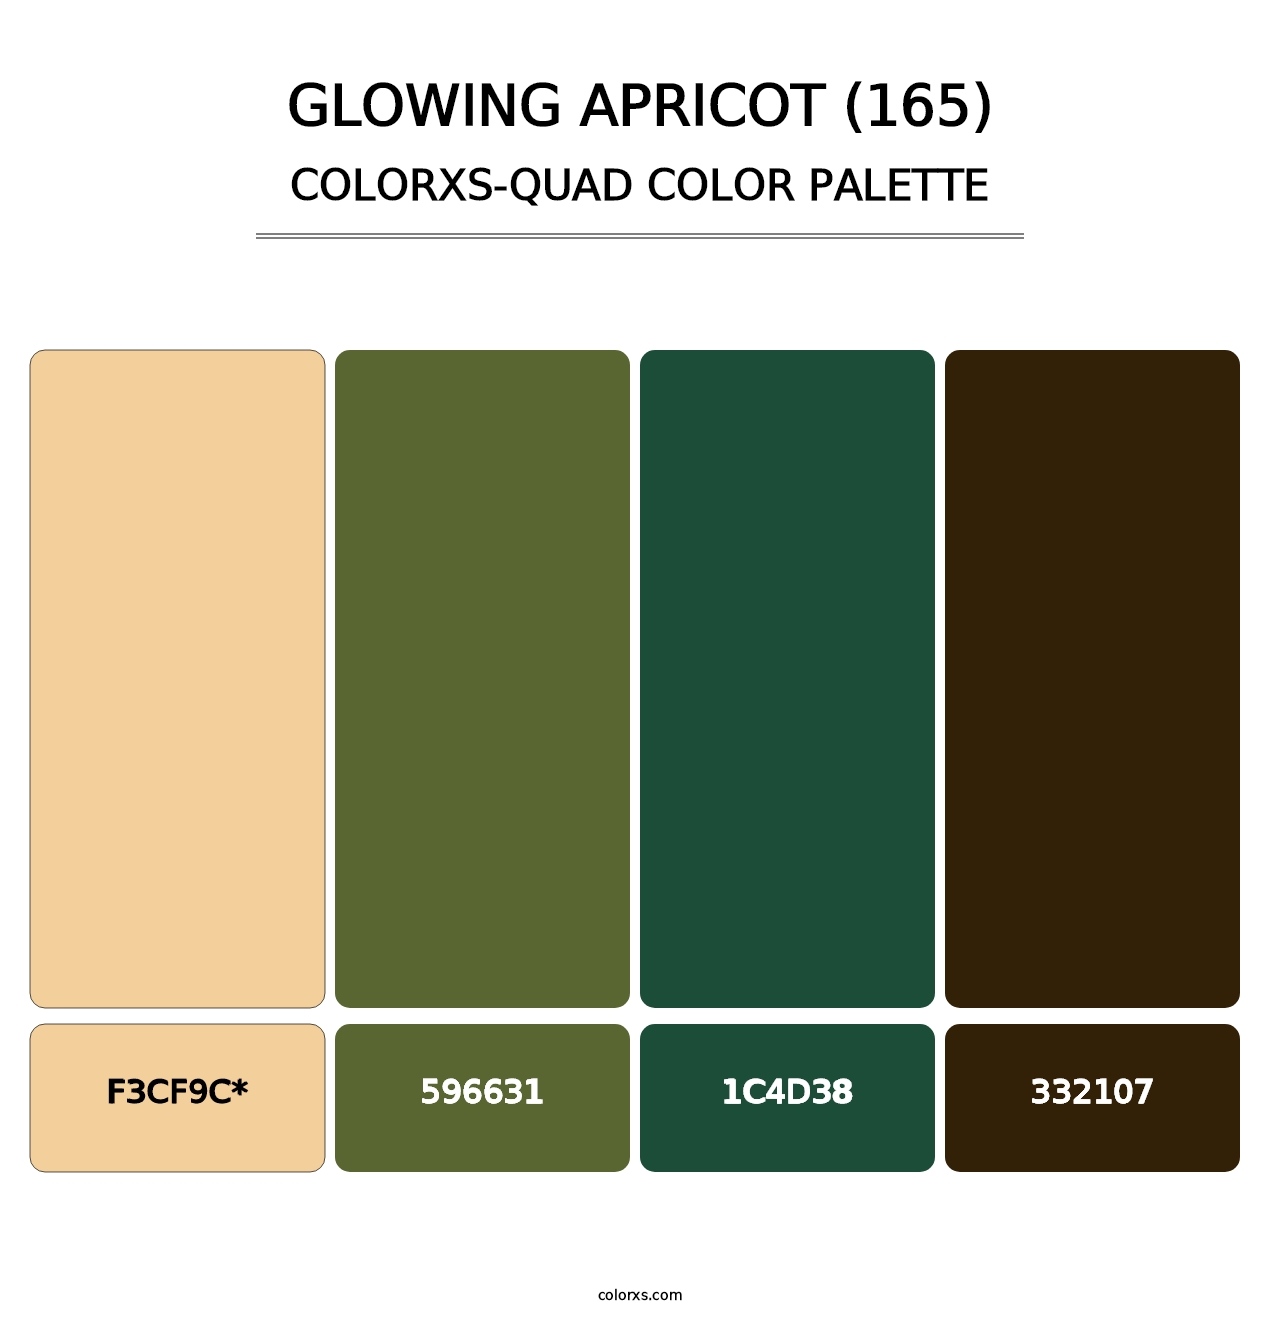 Glowing Apricot (165) - Colorxs Quad Palette